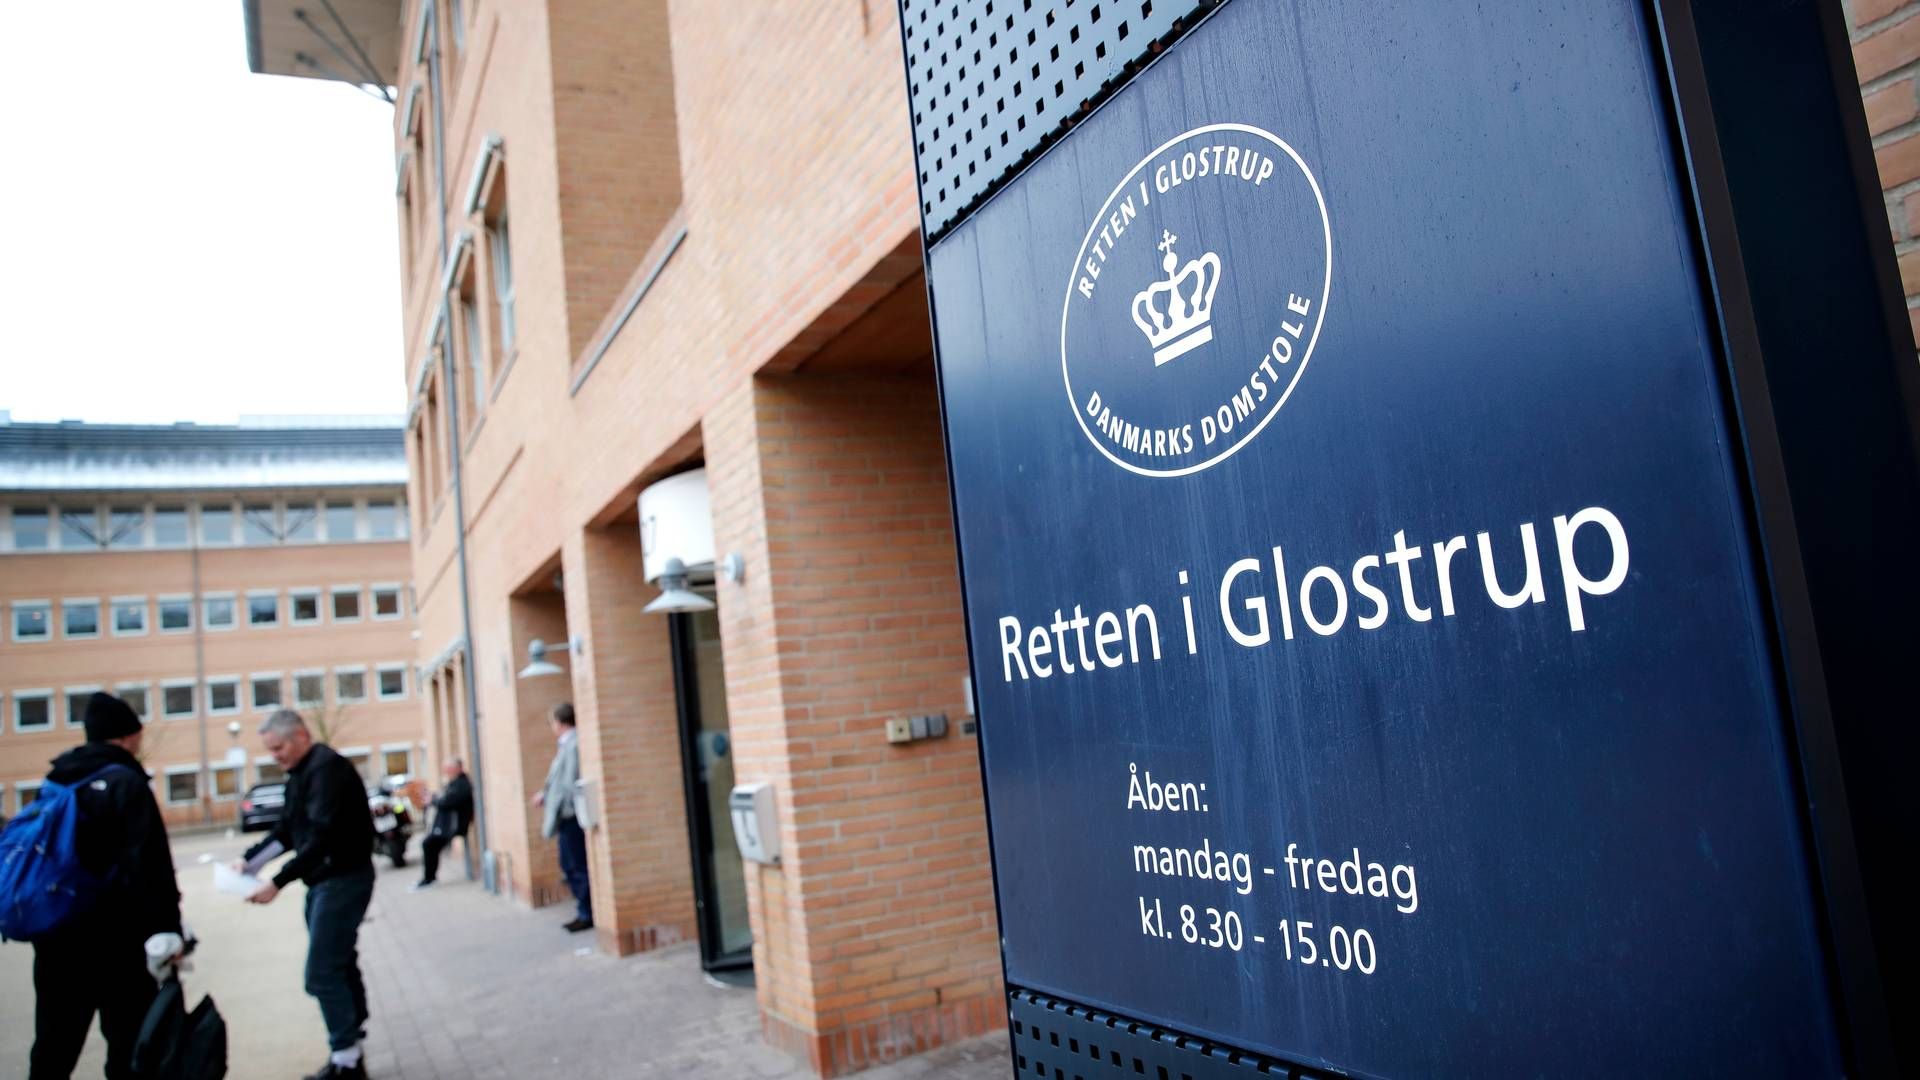 Retten i Glostrup har onsdag besluttet at varetægtsfængsle Anthony Mark Patterson i fire uger. | Foto: Jens Dresling/Politiken/Ritzau Scanpix